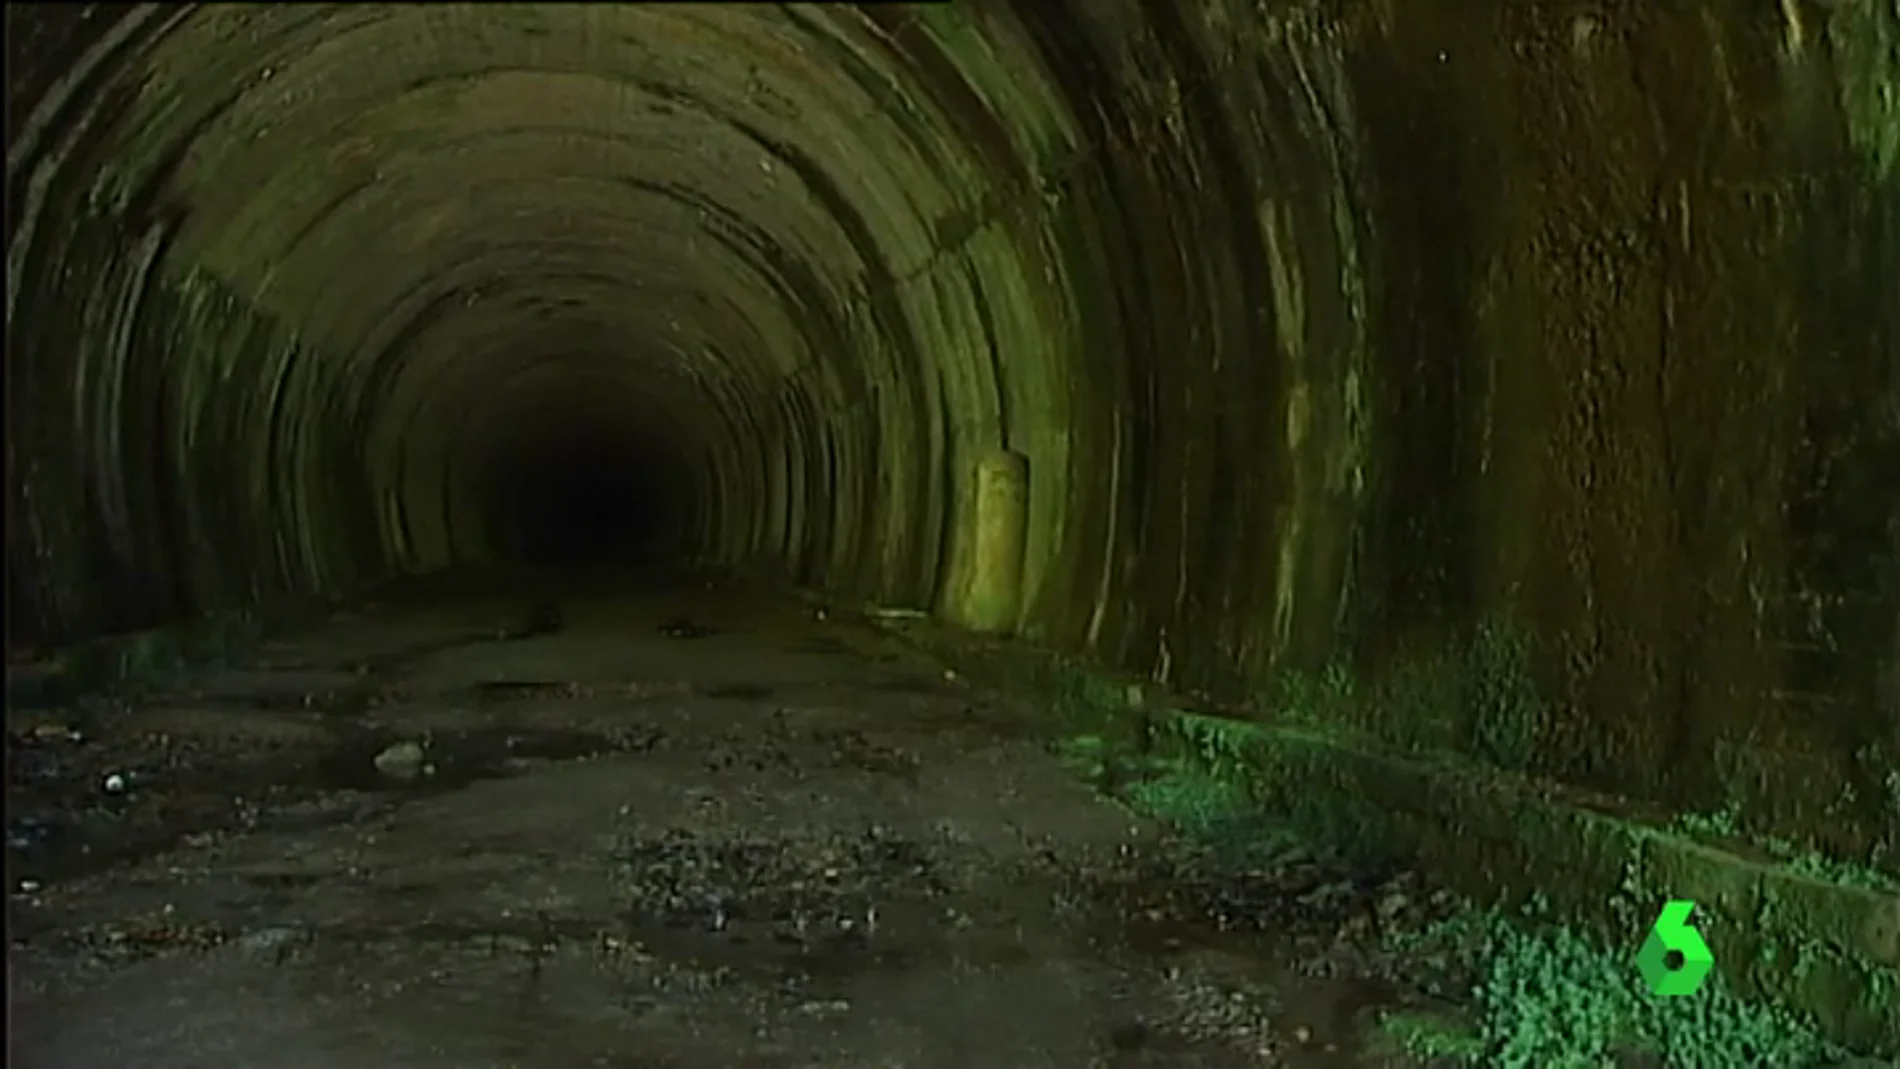 Túnel de la Engaña, Cantabria